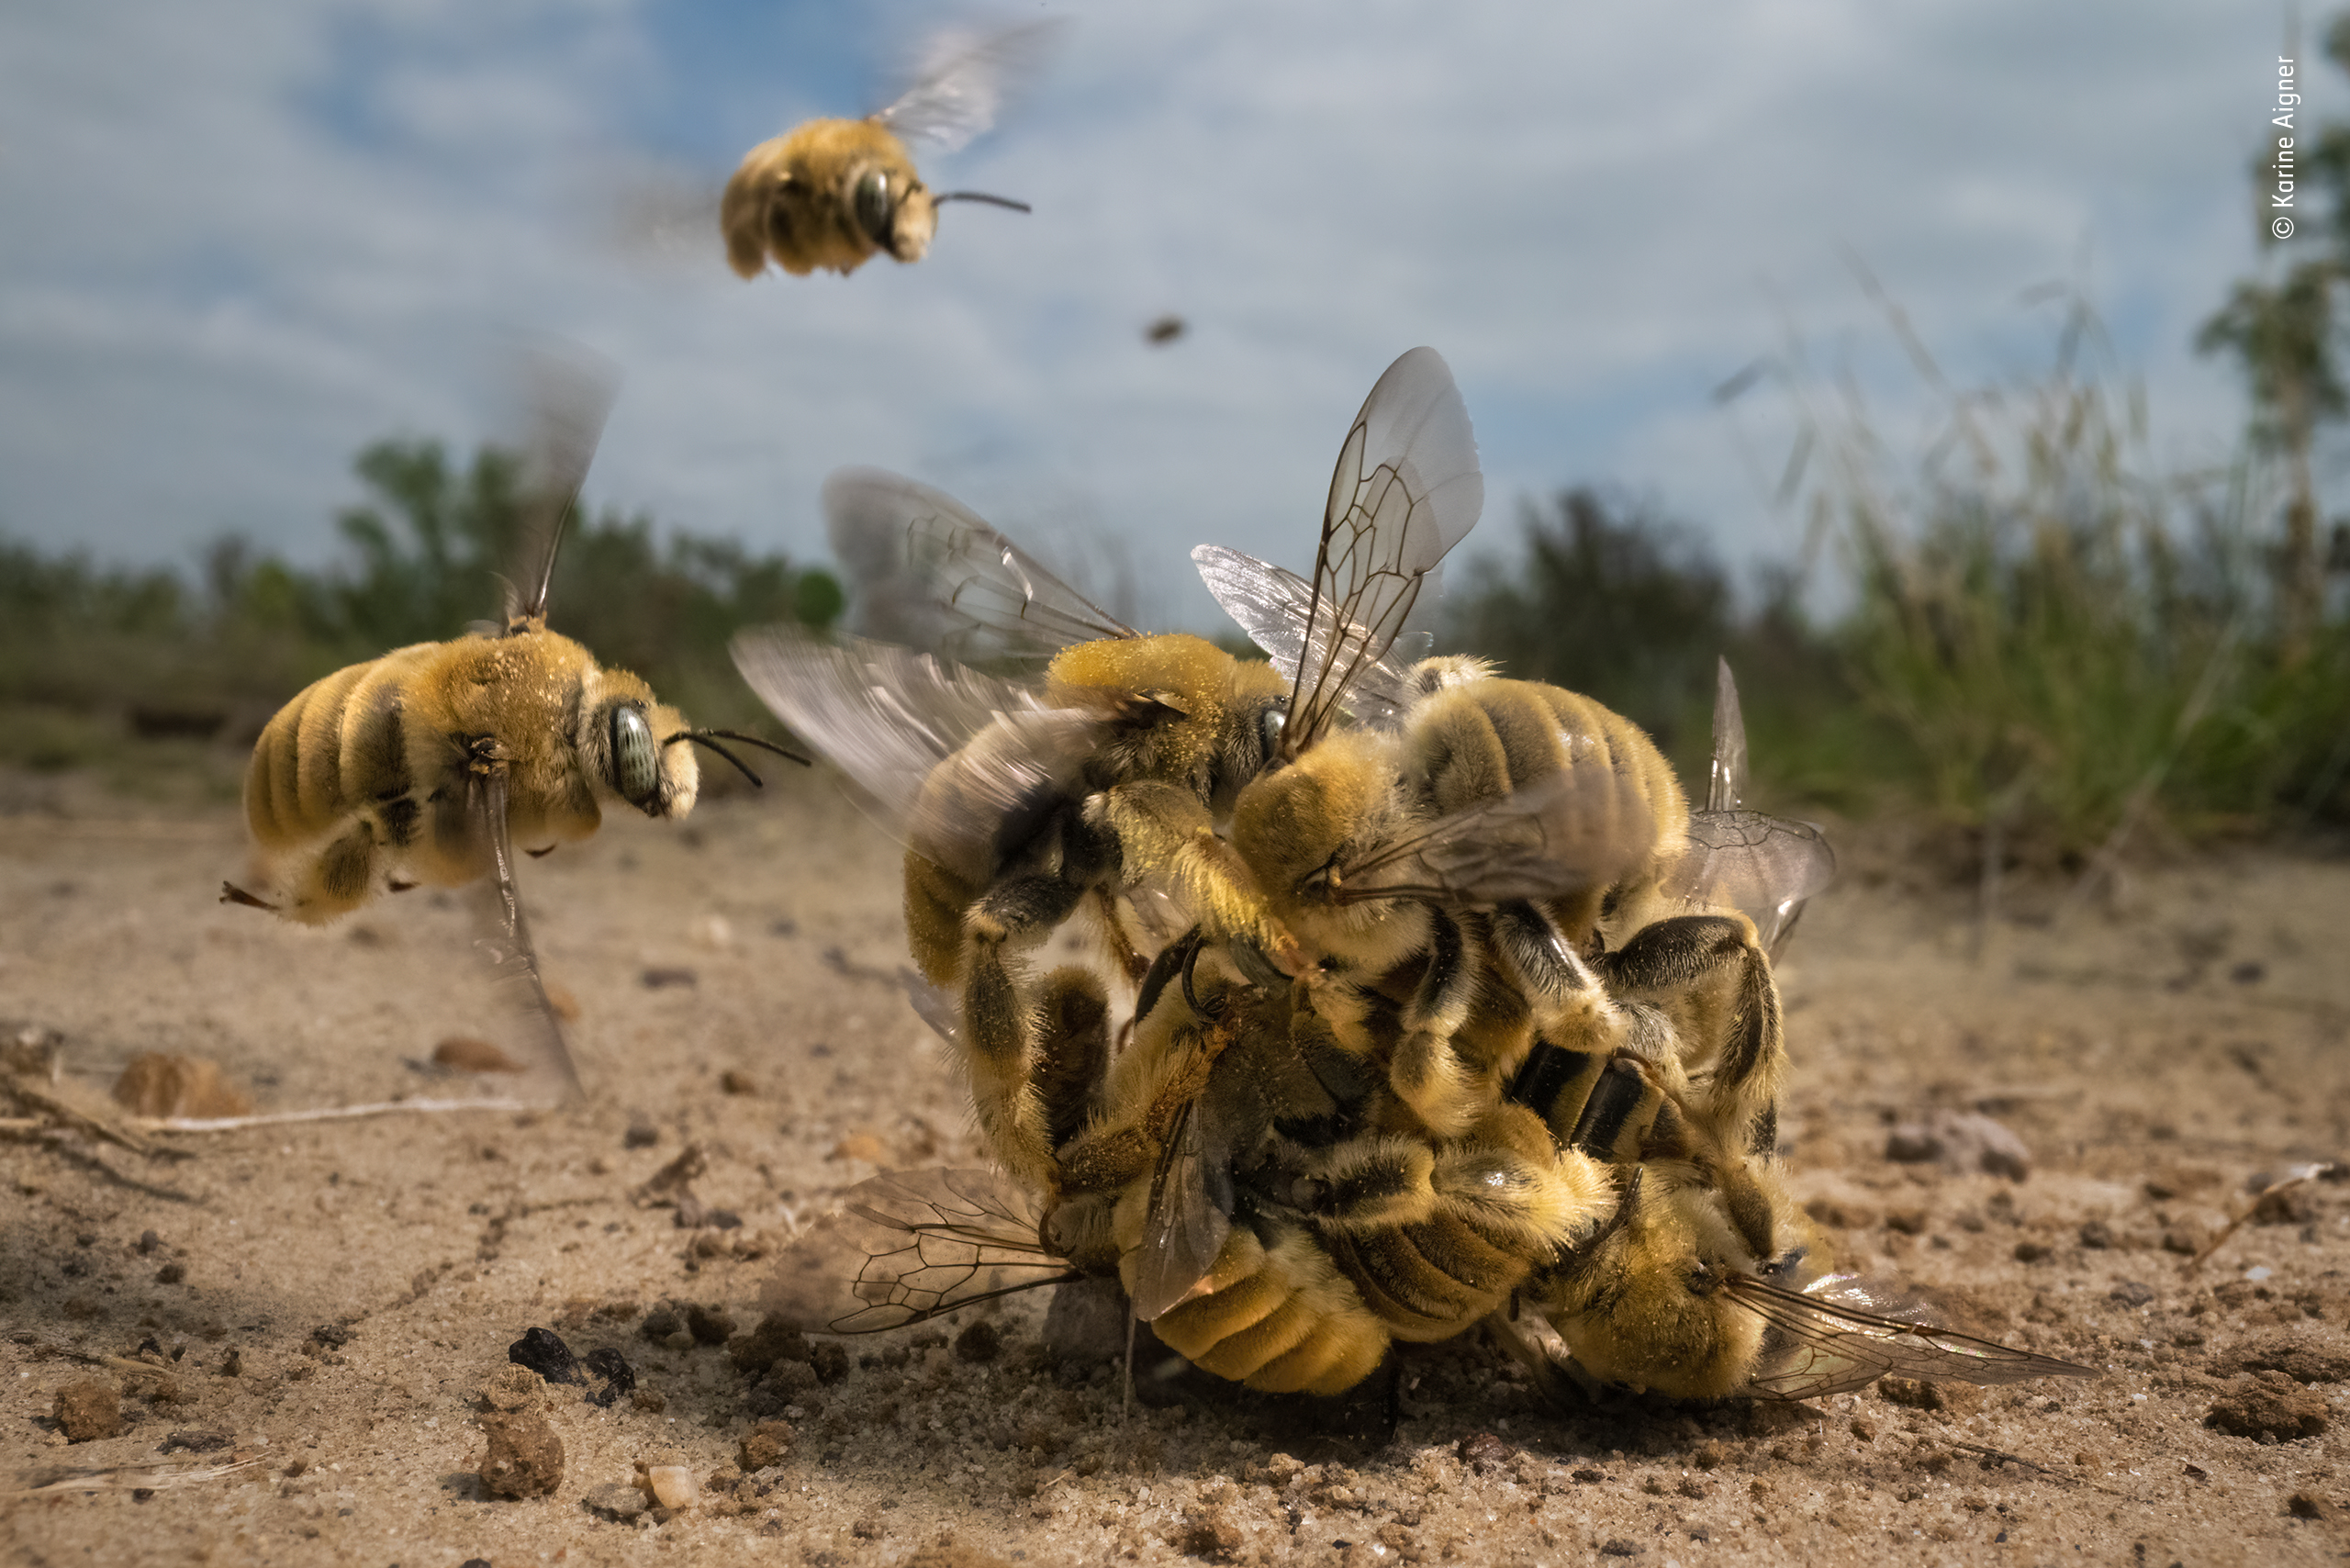 IL GRANDE RONZIO. ©Karine Aigner, USA. / Wildlife Photographer of the year/Vincitore, Comportamento: Invertebrati. VINCITORE ASSOLUTO WILDLIFE PHOTOGRAPHER OF THE YEAR 2022. Karine Aigner si avvicina all'azione mentre un gruppo di api compete per accoppiarsi. Usando un obiettivo macro, Karine ha catturato il culmine dell' attività di una palla ronzante di api cactus che rotolava sulla sabbia calda. Dopo pochi minuti, la coppia al centro – un maschio aggrappato all'unica femmina nella mischia – volò via per accoppiarsi. Le api nel mondo sono minacciate dalla perdita di habitat, dai pesticidi e dai cambiamenti climatici. Con il 70% delle specie di api che nidificano sottoterra, è sempre più importante che le aree di suolo naturale siano lasciate intatte. Località: South Texas, USA Dettagli tecnici: Sony α7R III + Laowa 24mm f14 2x obiettivo sonda macro; 1/1000 sec; ISO 6400; Profoto strobo + trigger wireless